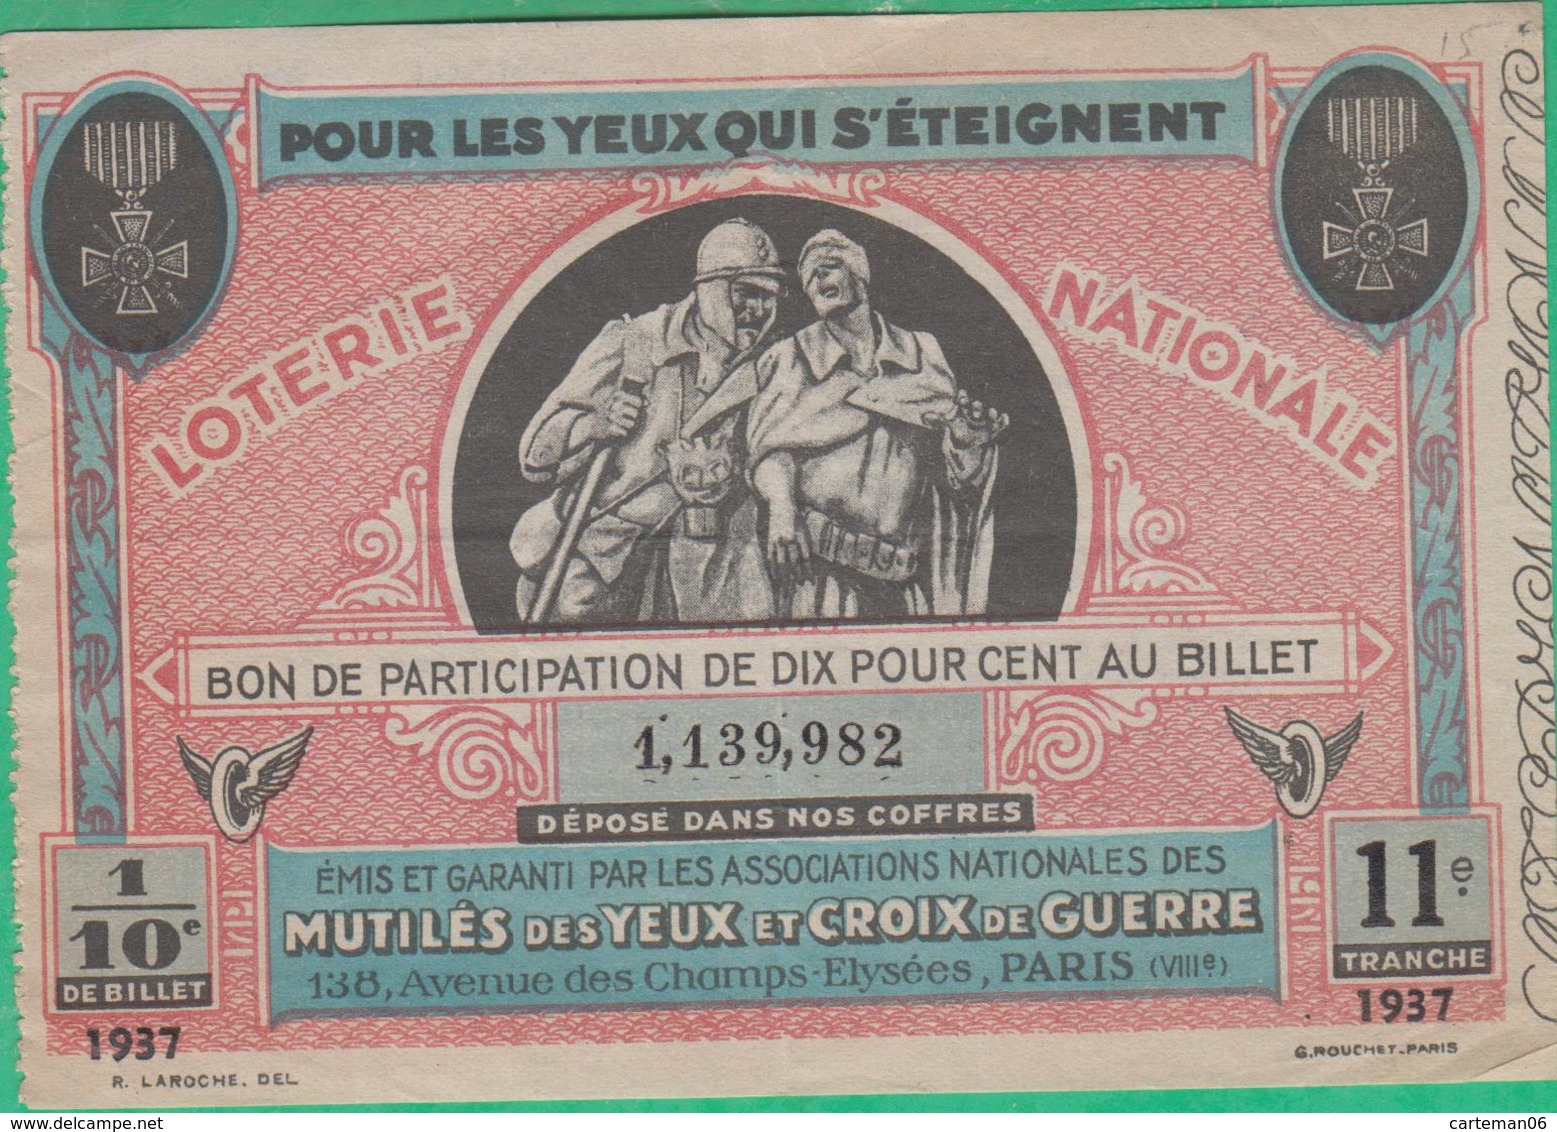 Billet De Loterie Nationale 1937 - Mutilés Des Yeux Et Croix De Guerre à Paris - Billets De Loterie